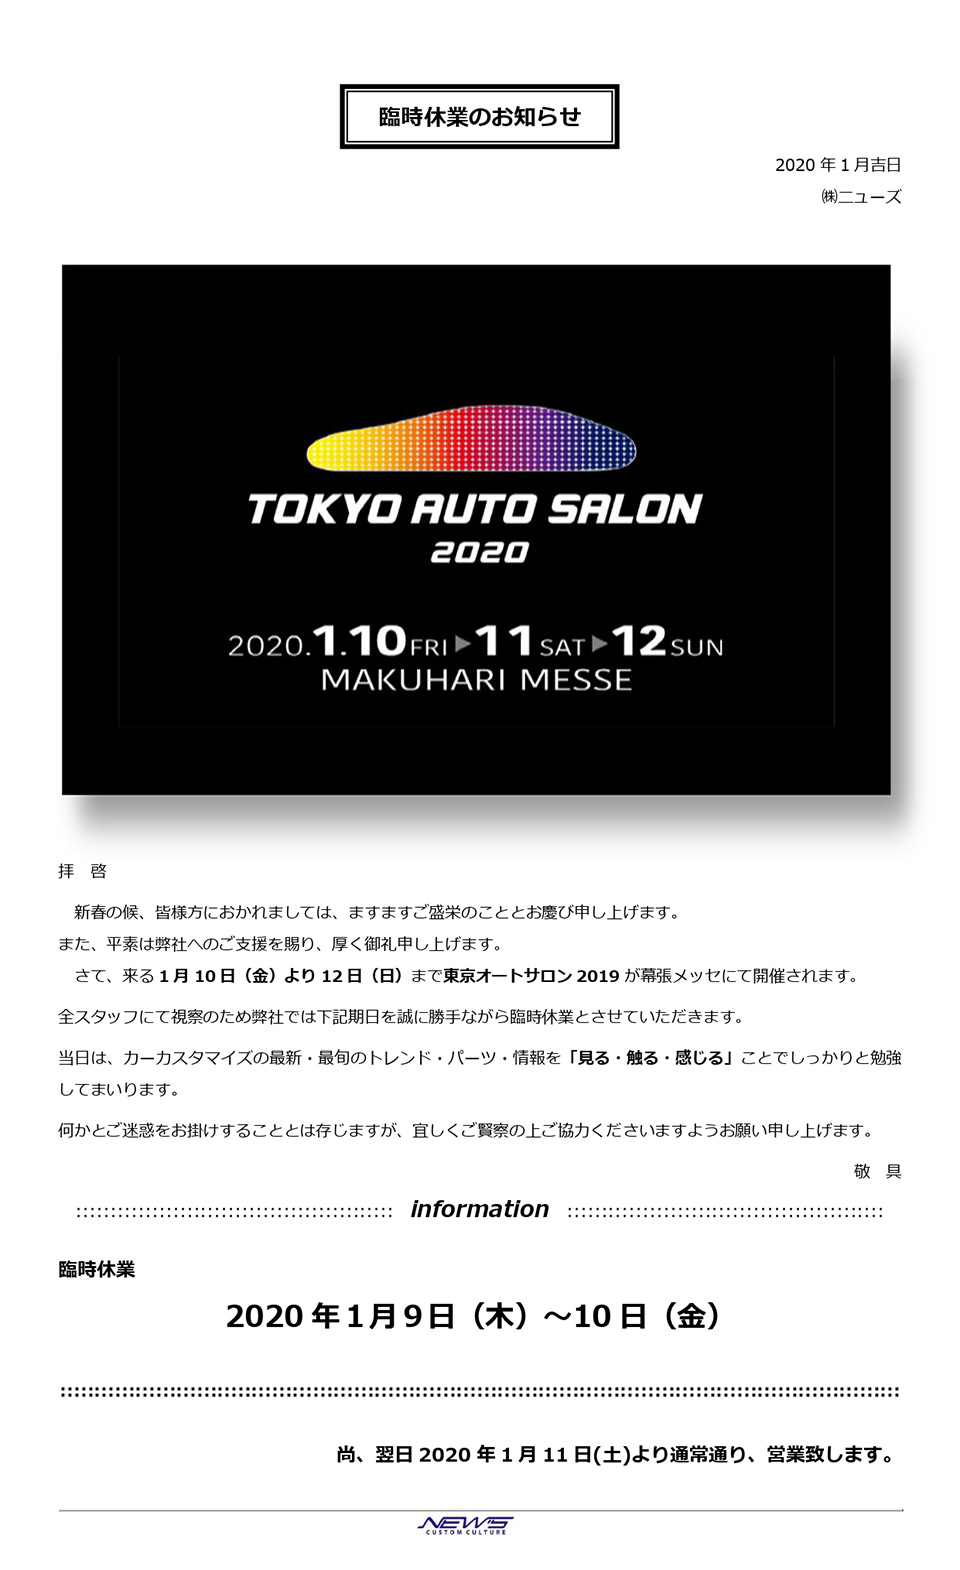 2020年1月9日〜10日は「東京オートサロン2020」視察の為、臨時休業させて頂きます。